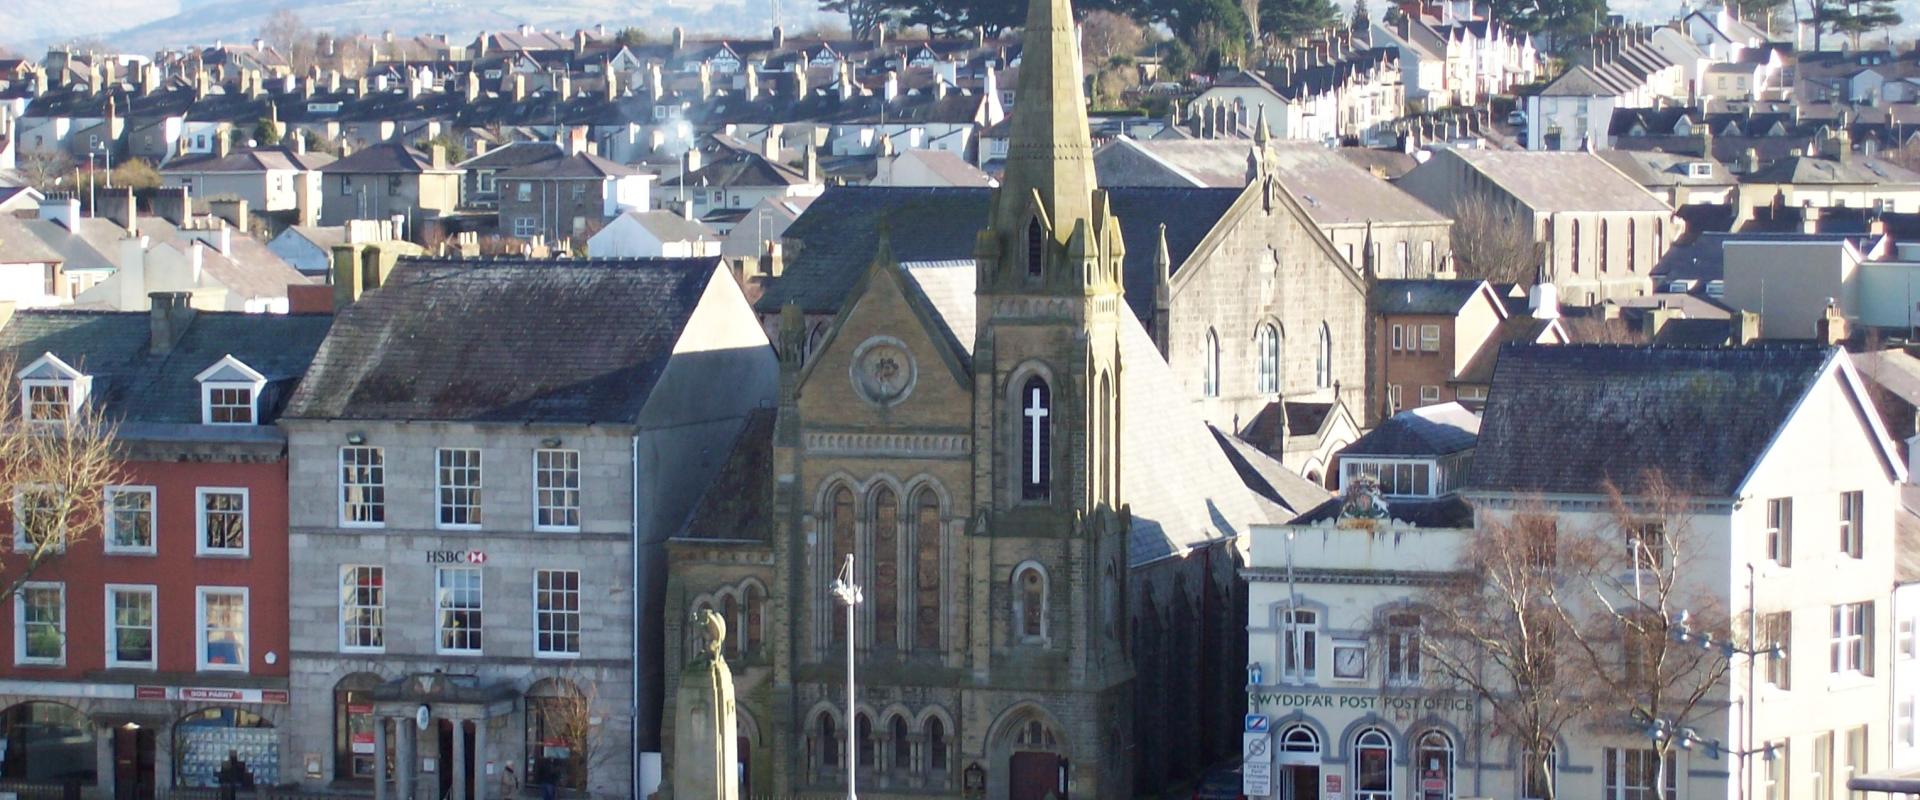 golygfa Sgwâr y Castell, gyda'r eglwys yn y canol / the view of Castle Square, with the church in the middle